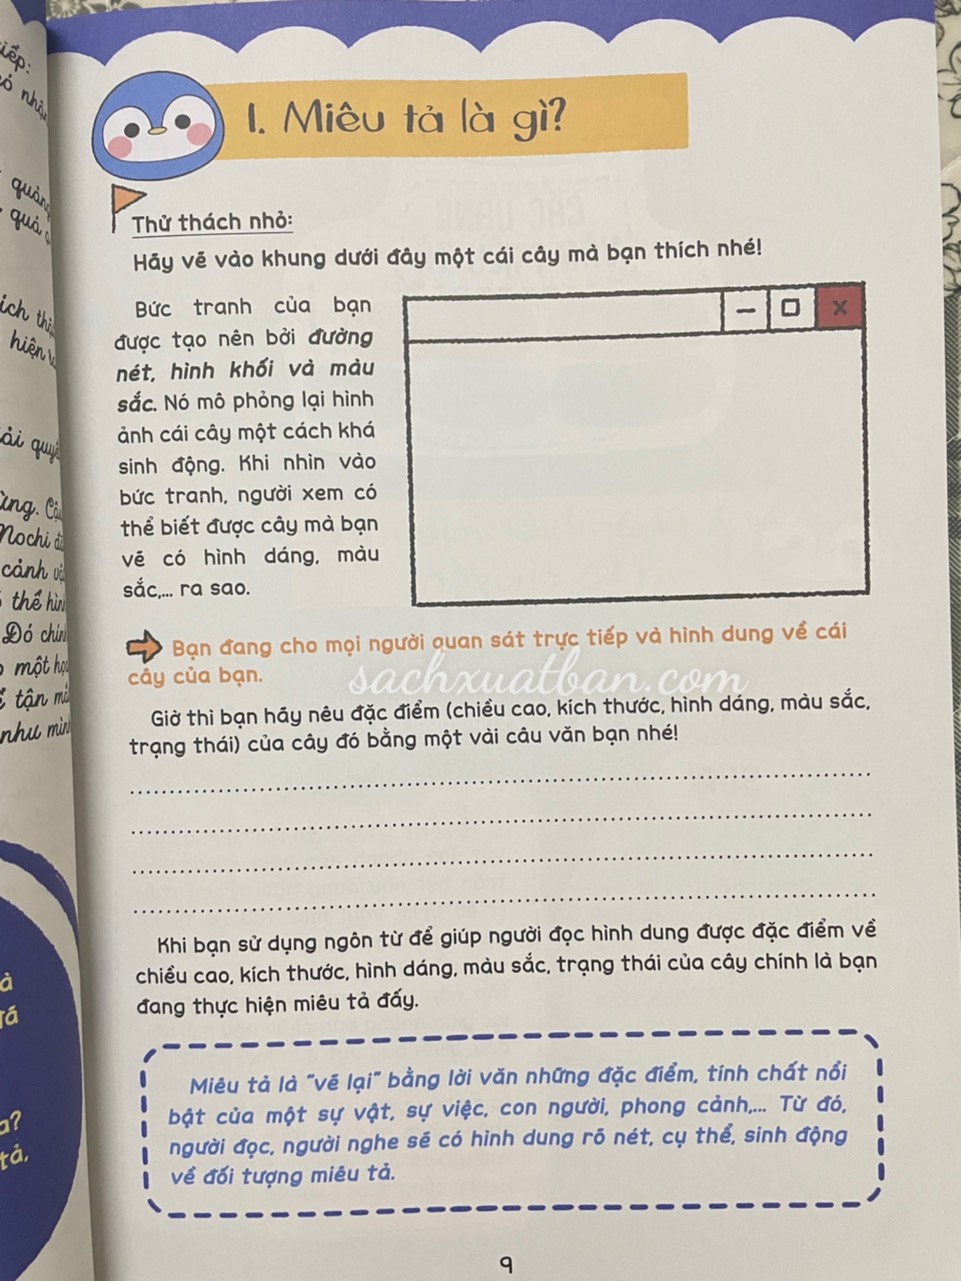 Sách Kỹ năng viết văn miêu tả - Dành cho học sinh lớp 4-5-6 (Dương Hằng, Lê Huyền)